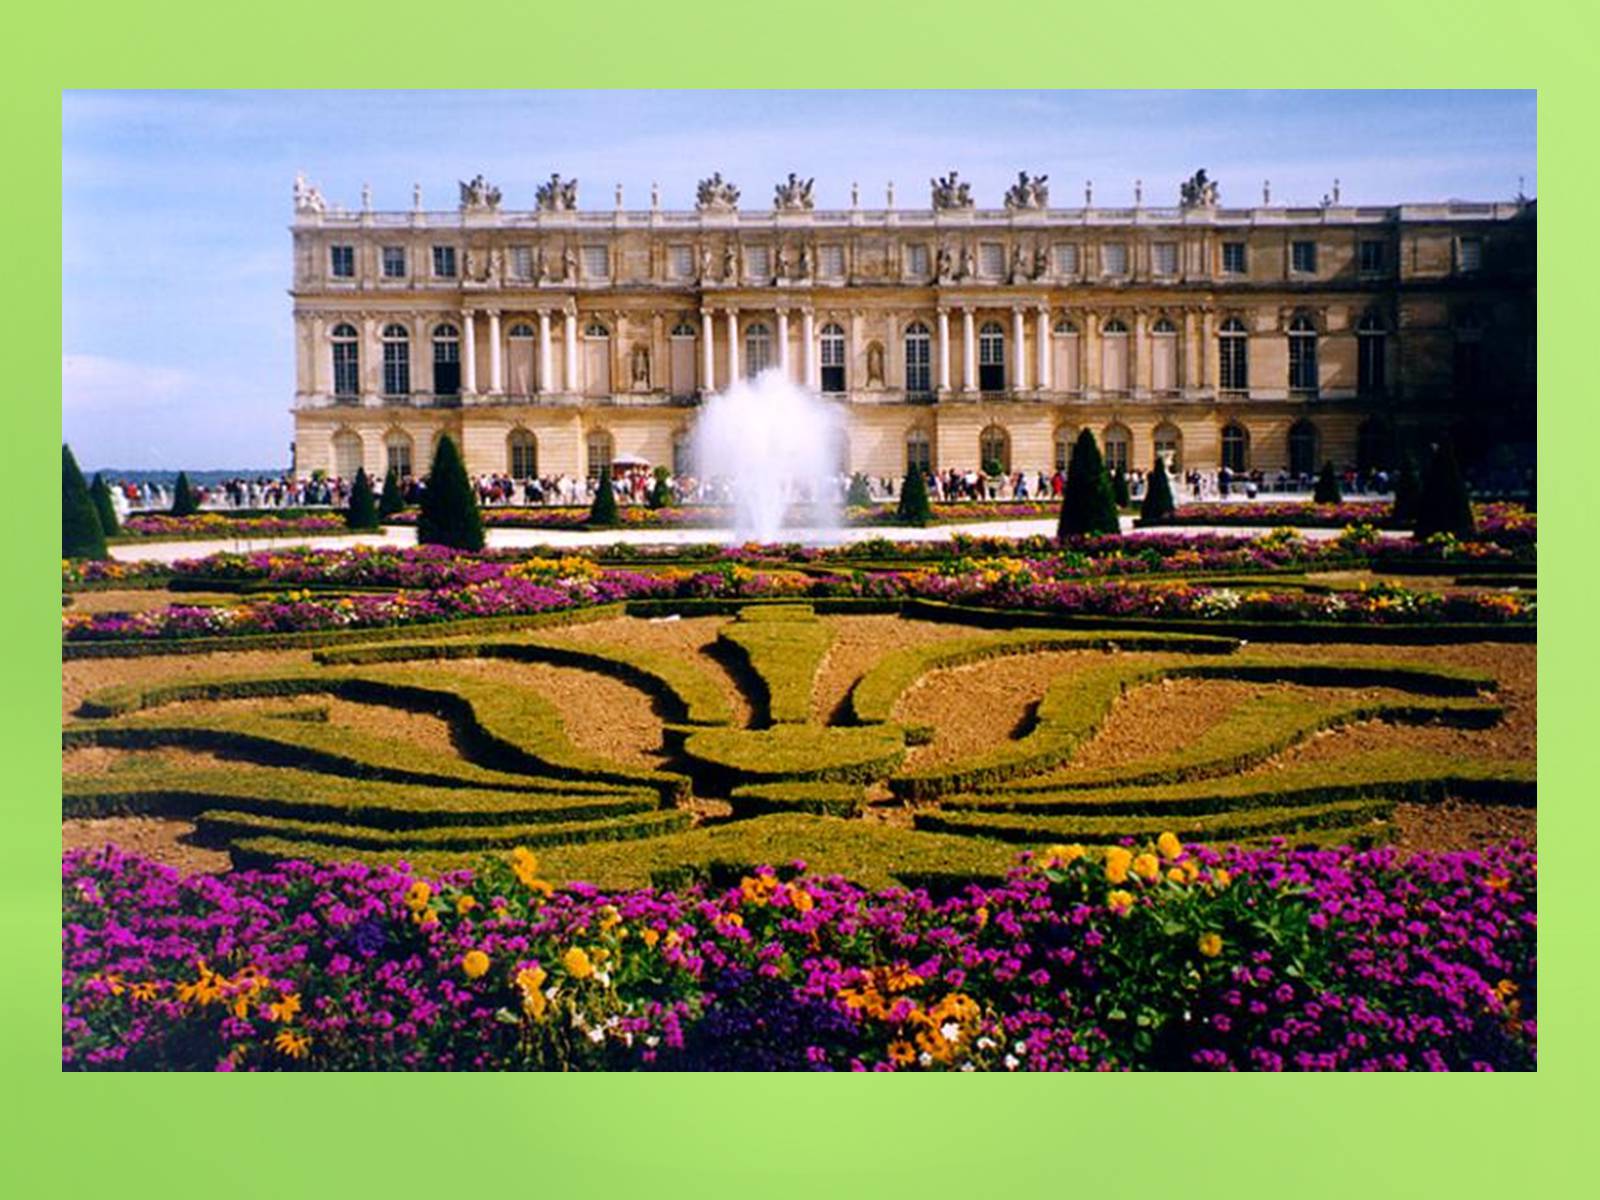 Де версаль. Версальский дворец Версаль Франция. Версаль дворцово-парковый ансамбль во Франции. Парковый ансамбль Версаля во Франции. Франция Версаль (в 17 км от Парижа).